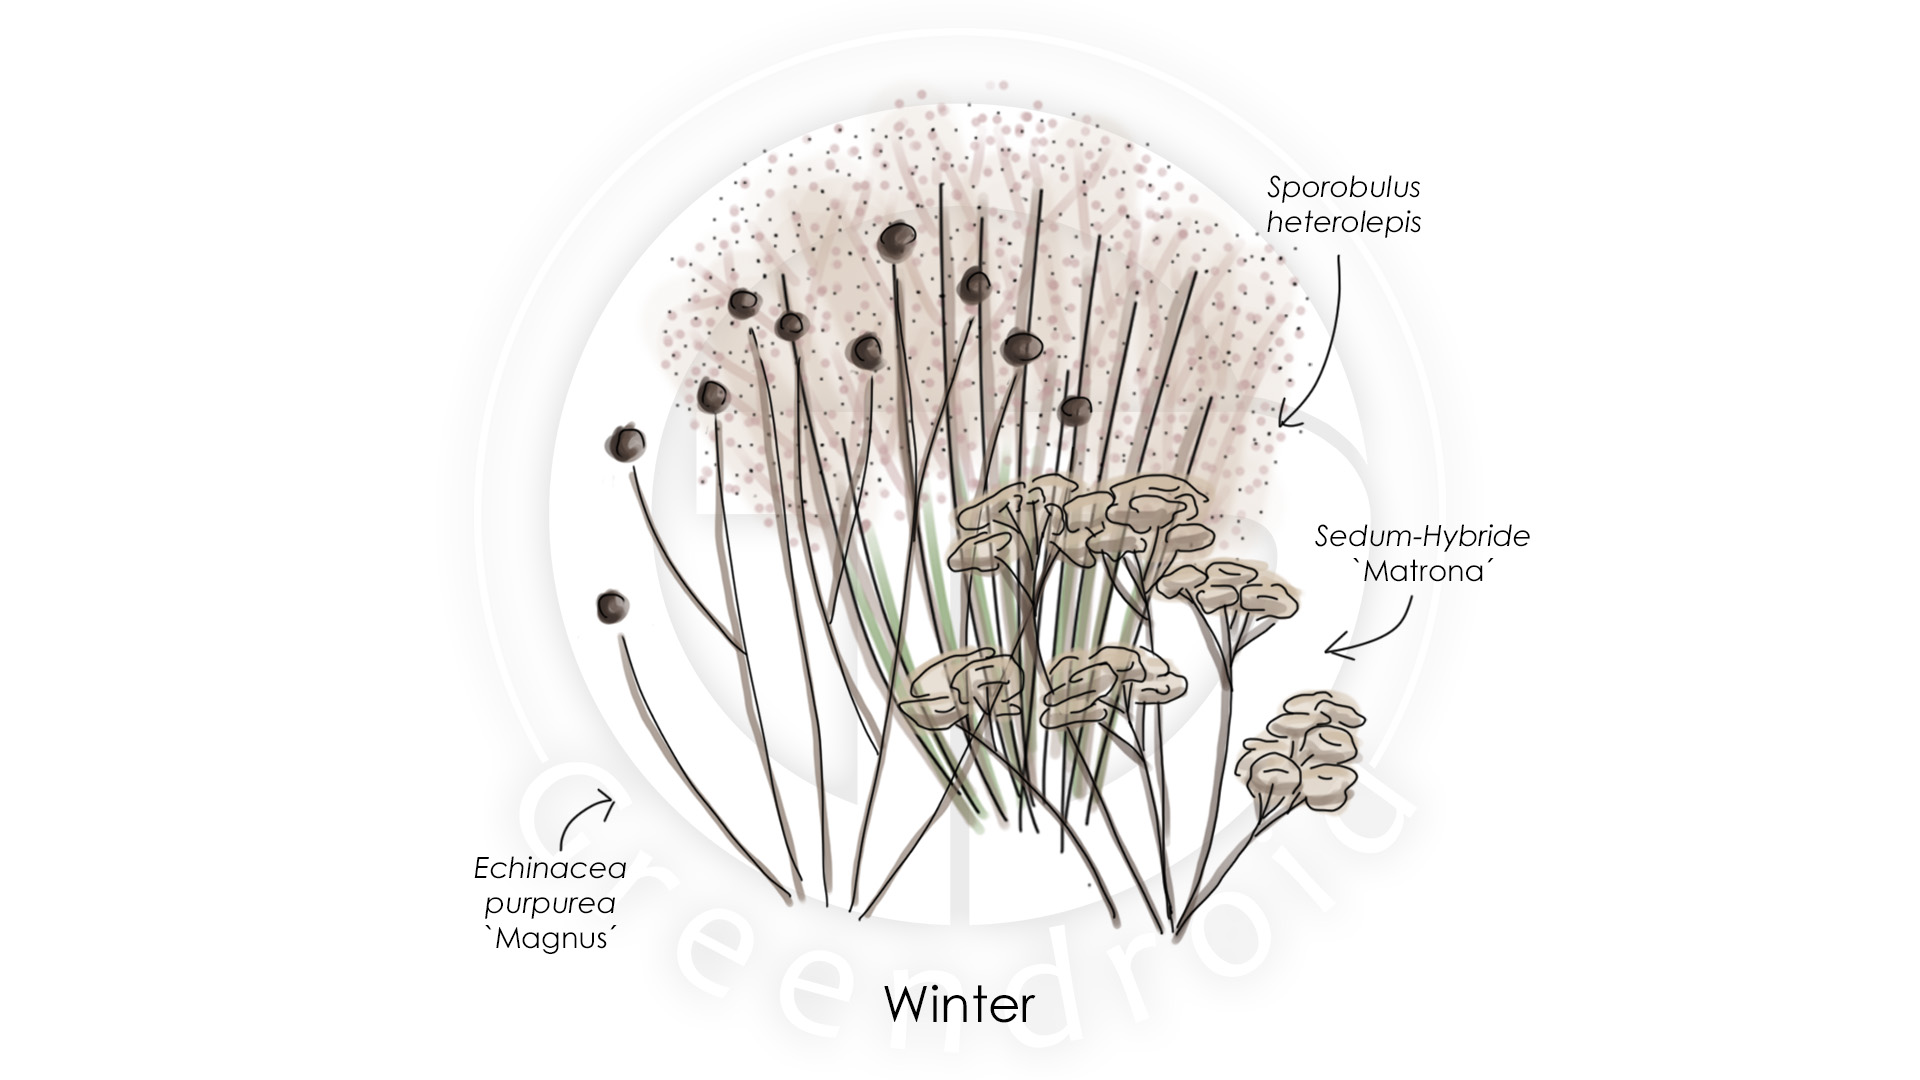 Echinacea, Sporobulus und Sedum im Winter